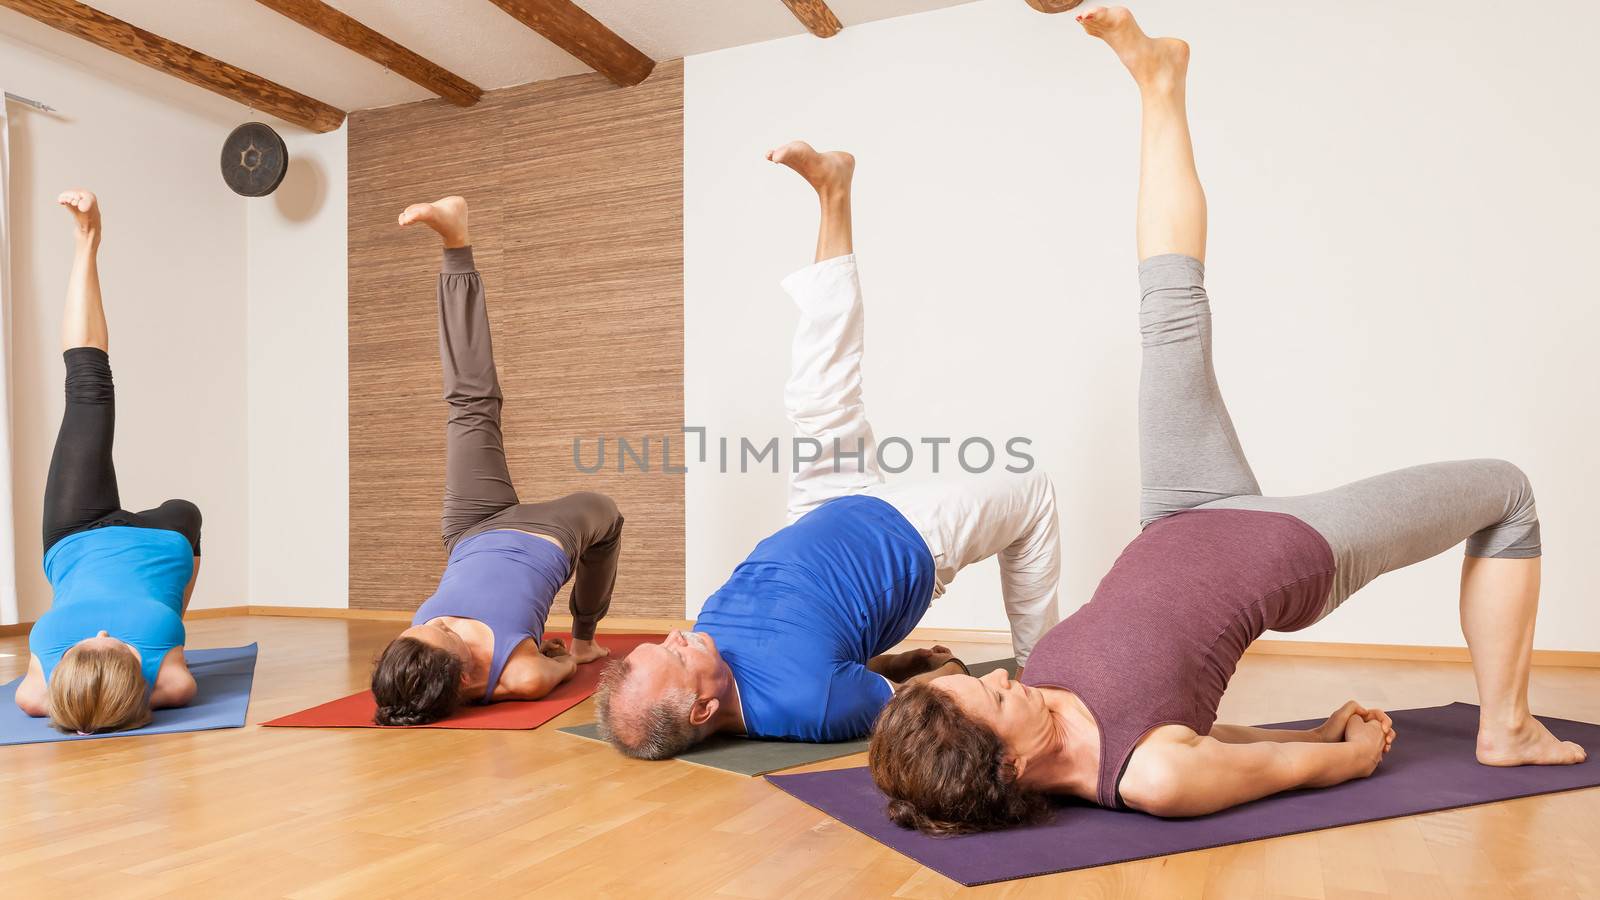 Yoga Exercise - Eka Pada Setu Bandha Sarvangasana by magann